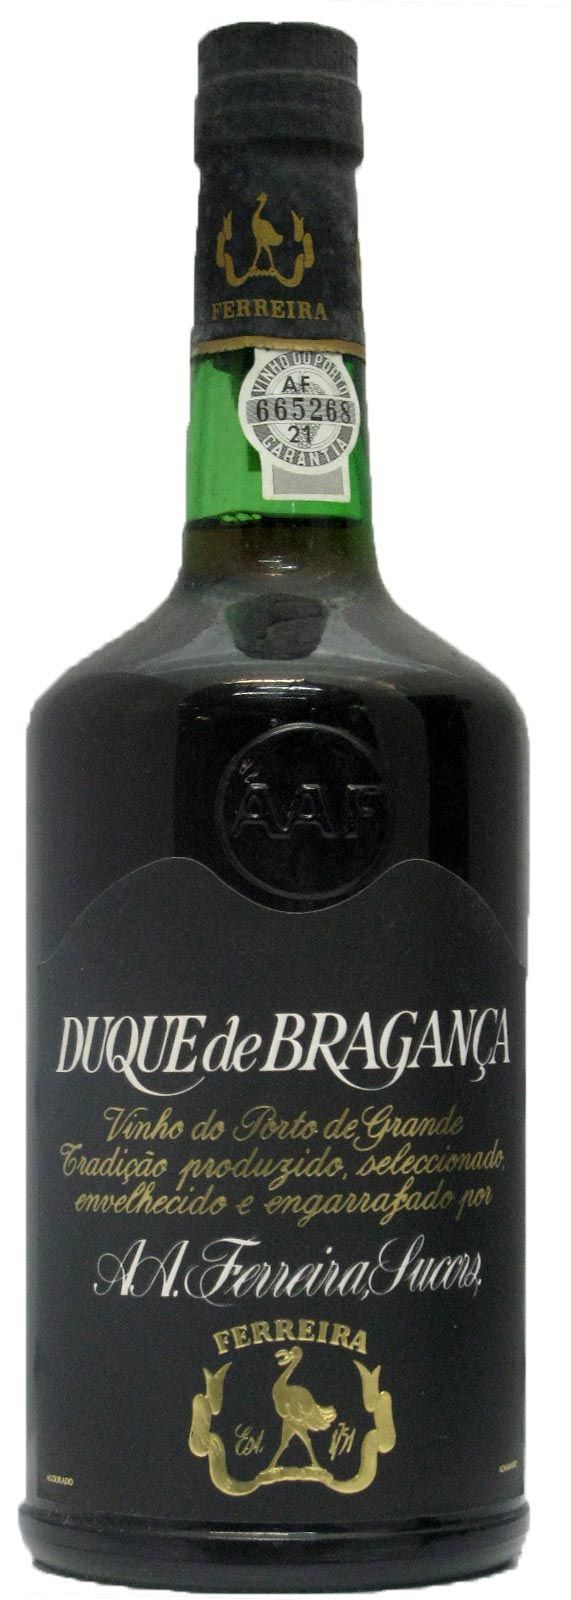 Ferreira Duque de Bragança Porto (rótulo preto)